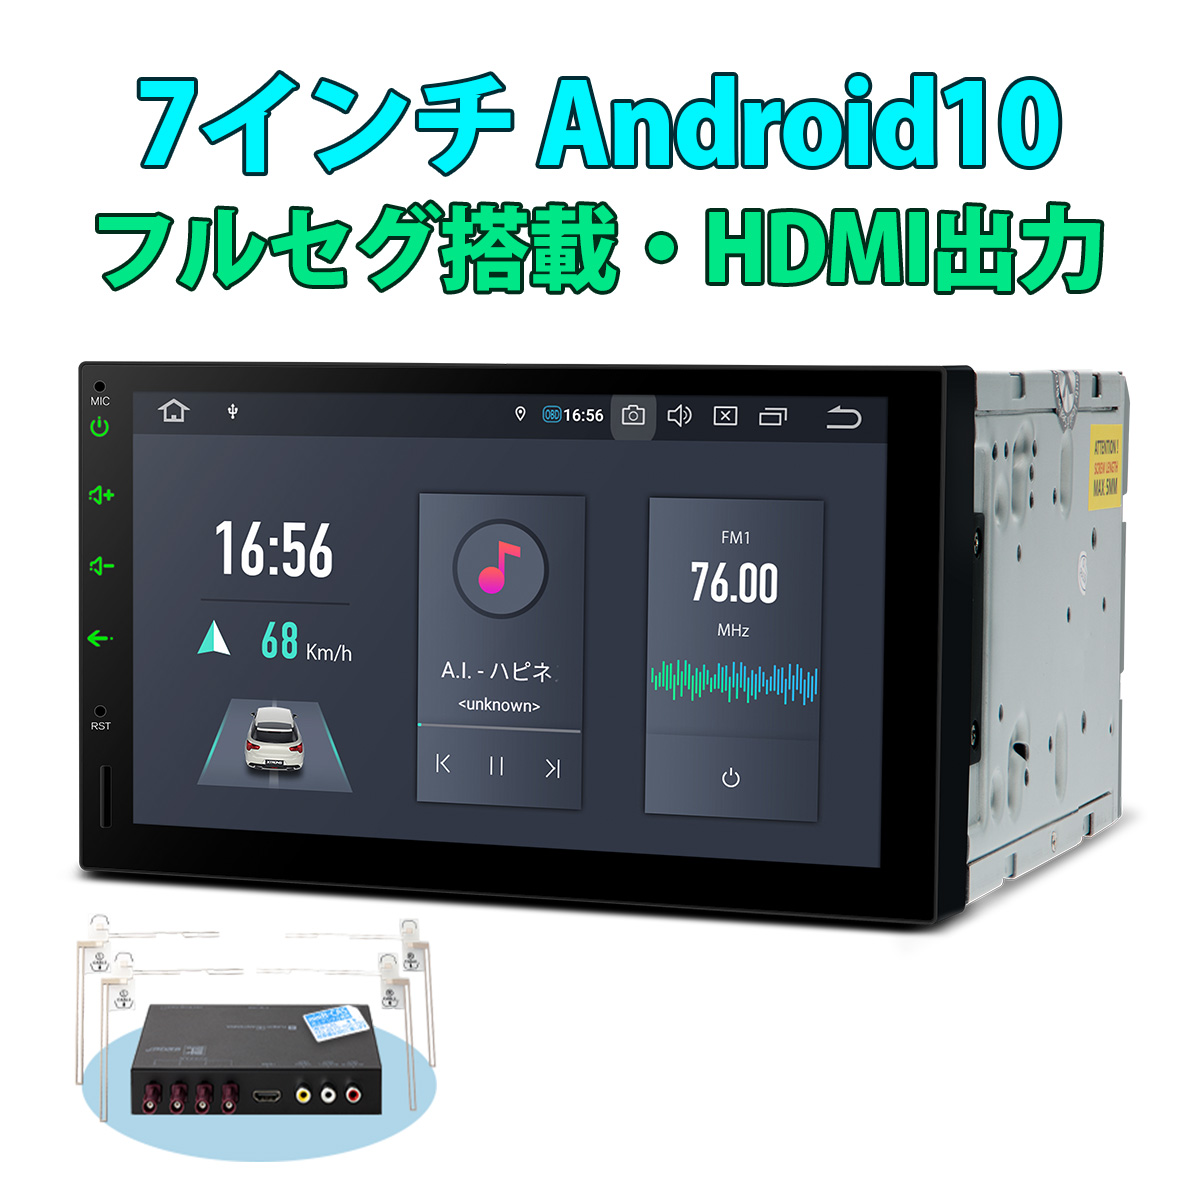 品質満点 限定価格セール TQS700SIL XTRONS カーナビ 6コア 2DIN 7インチ 地デジ搭載 タッチ連動操作可 Android10.0 車載PC フルセグ HDMI出力 RAM4G ROM64G カーステレオ カーオーディオ OBD2 ミラーリング 4K DVR Bluetooth iPhone対応 android auto対応 DSP elma-ultrasonic.be elma-ultrasonic.be